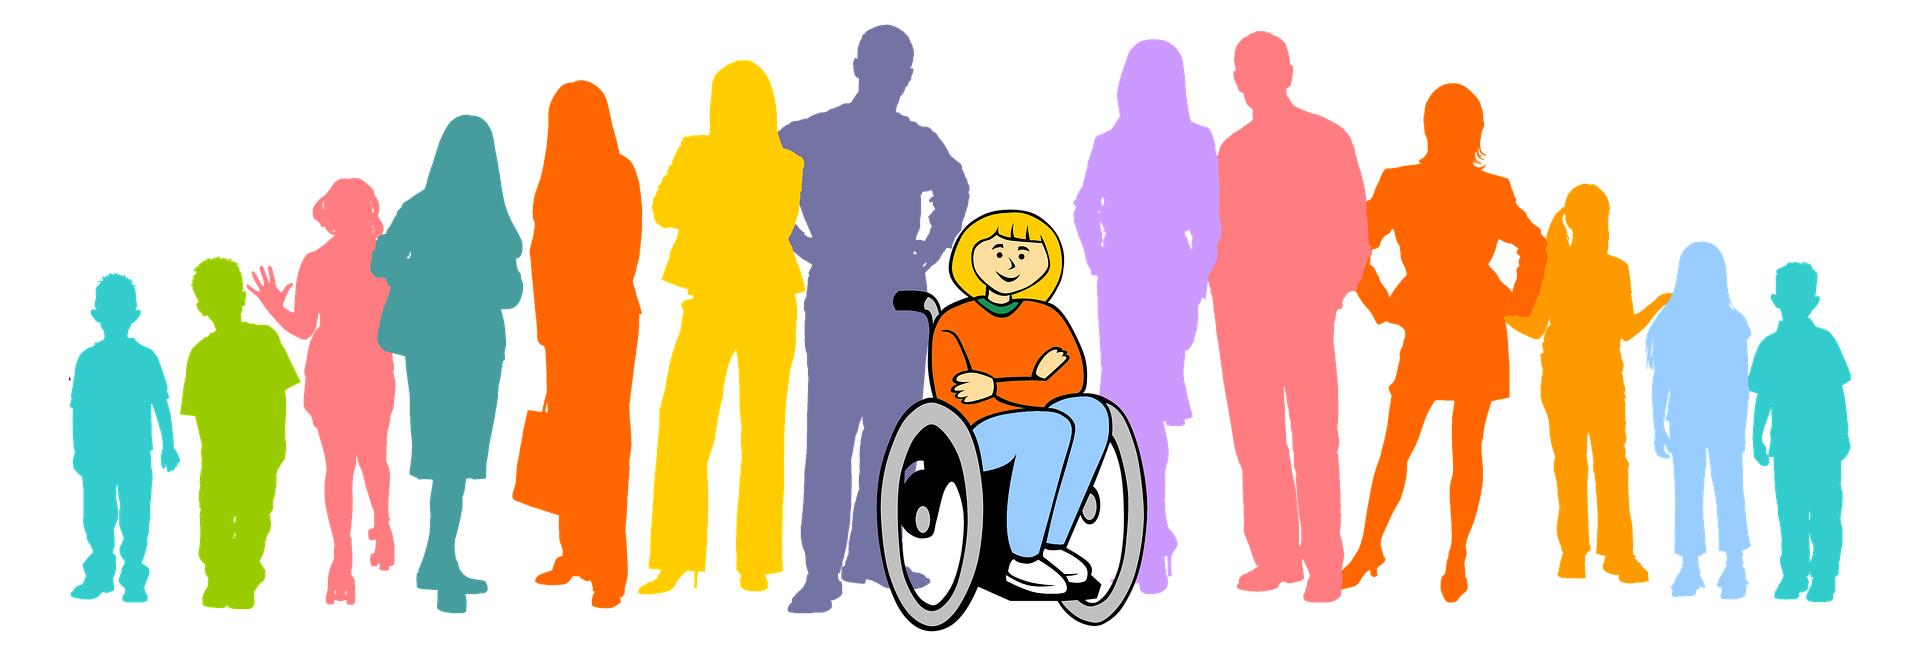 Люди с ограниченными возможностями картинки. Социализация людей с инвалидностью. Люди с ОВЗ. Общество инвалидов. Лицо с ограниченными возможностями развития это